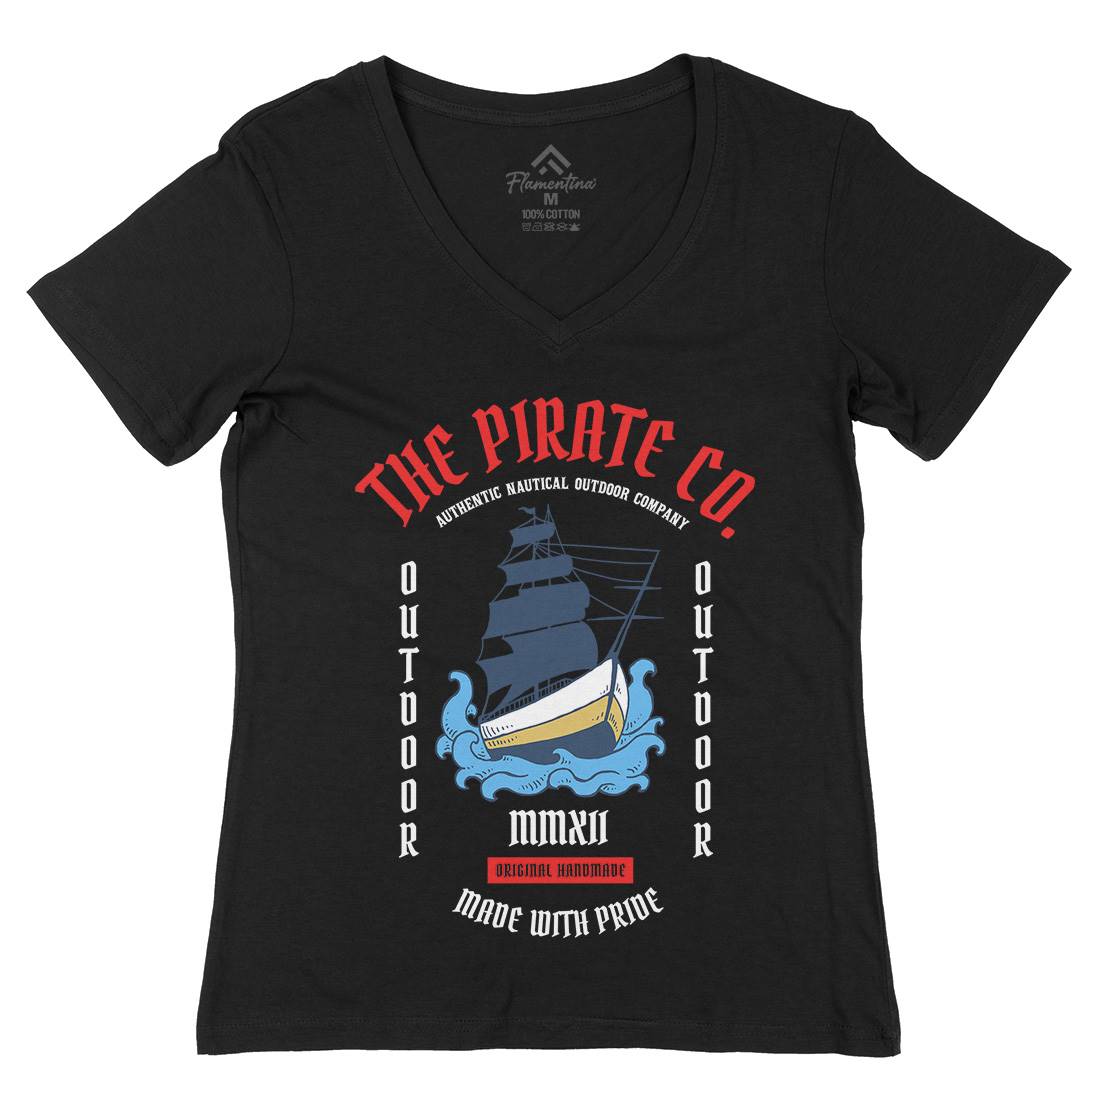 The Ship Womens Organic V-Neck T-Shirt Navy C790